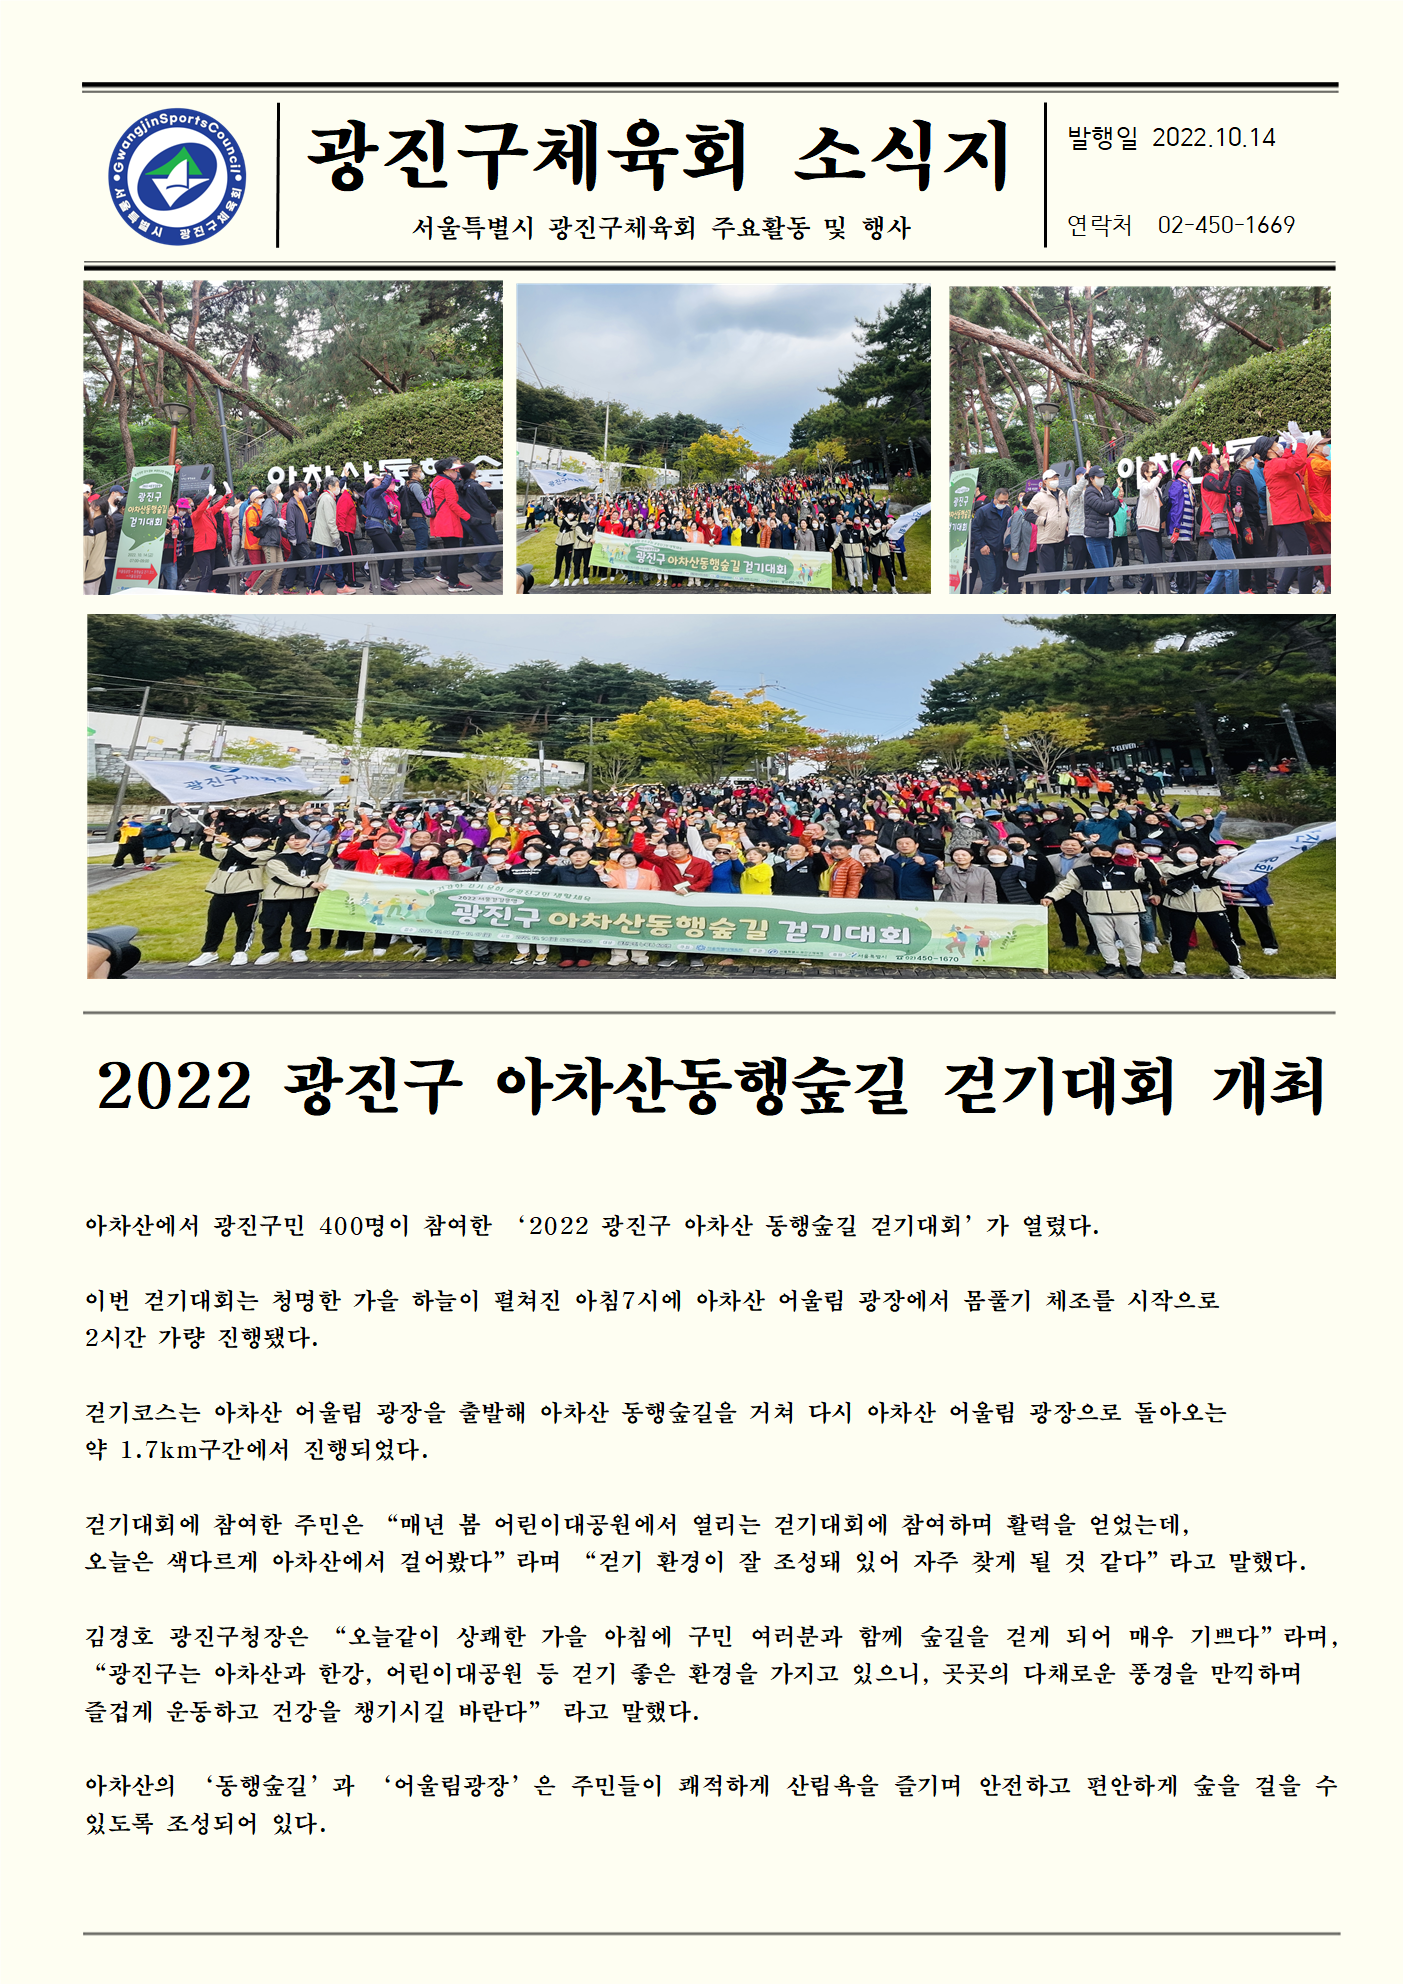 22.10.14 2022 광진구 아차산동행숲길 걷기대회 개최.png